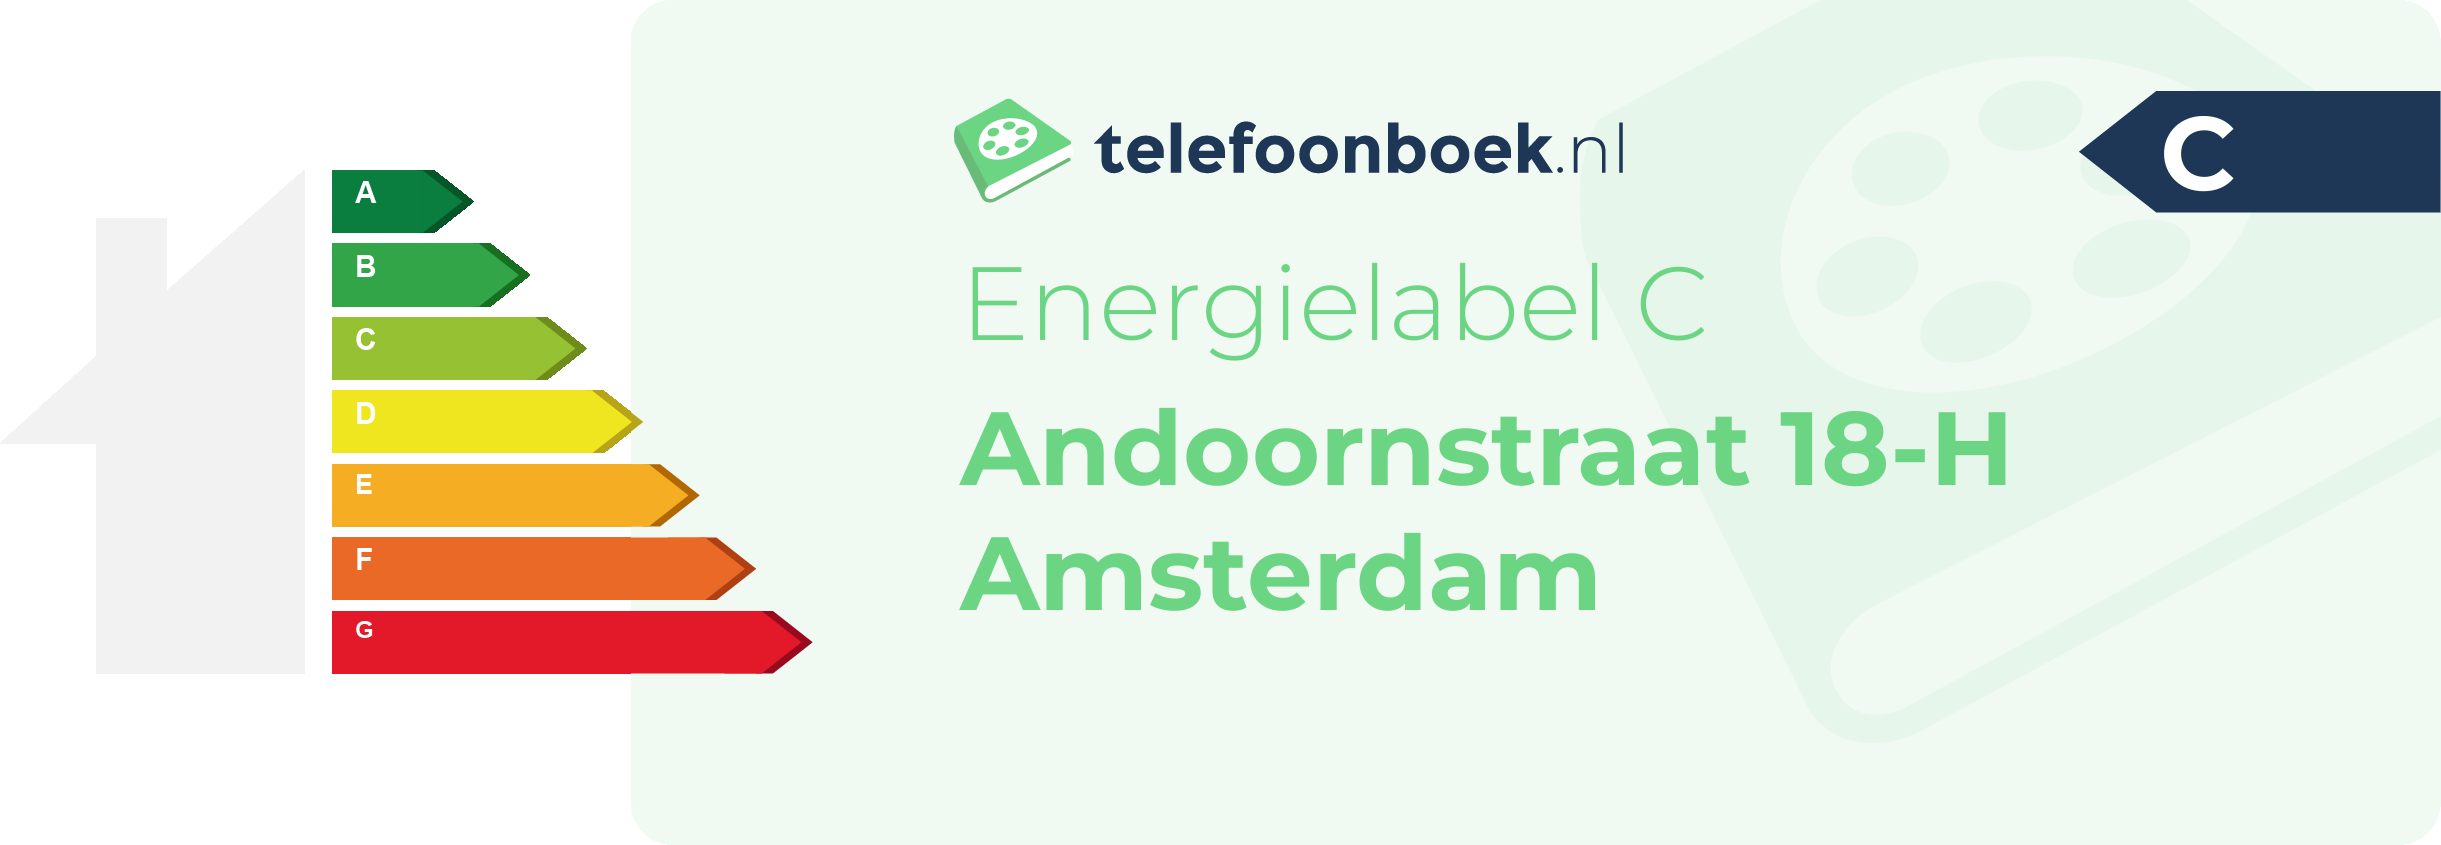 Energielabel Andoornstraat 18-H Amsterdam